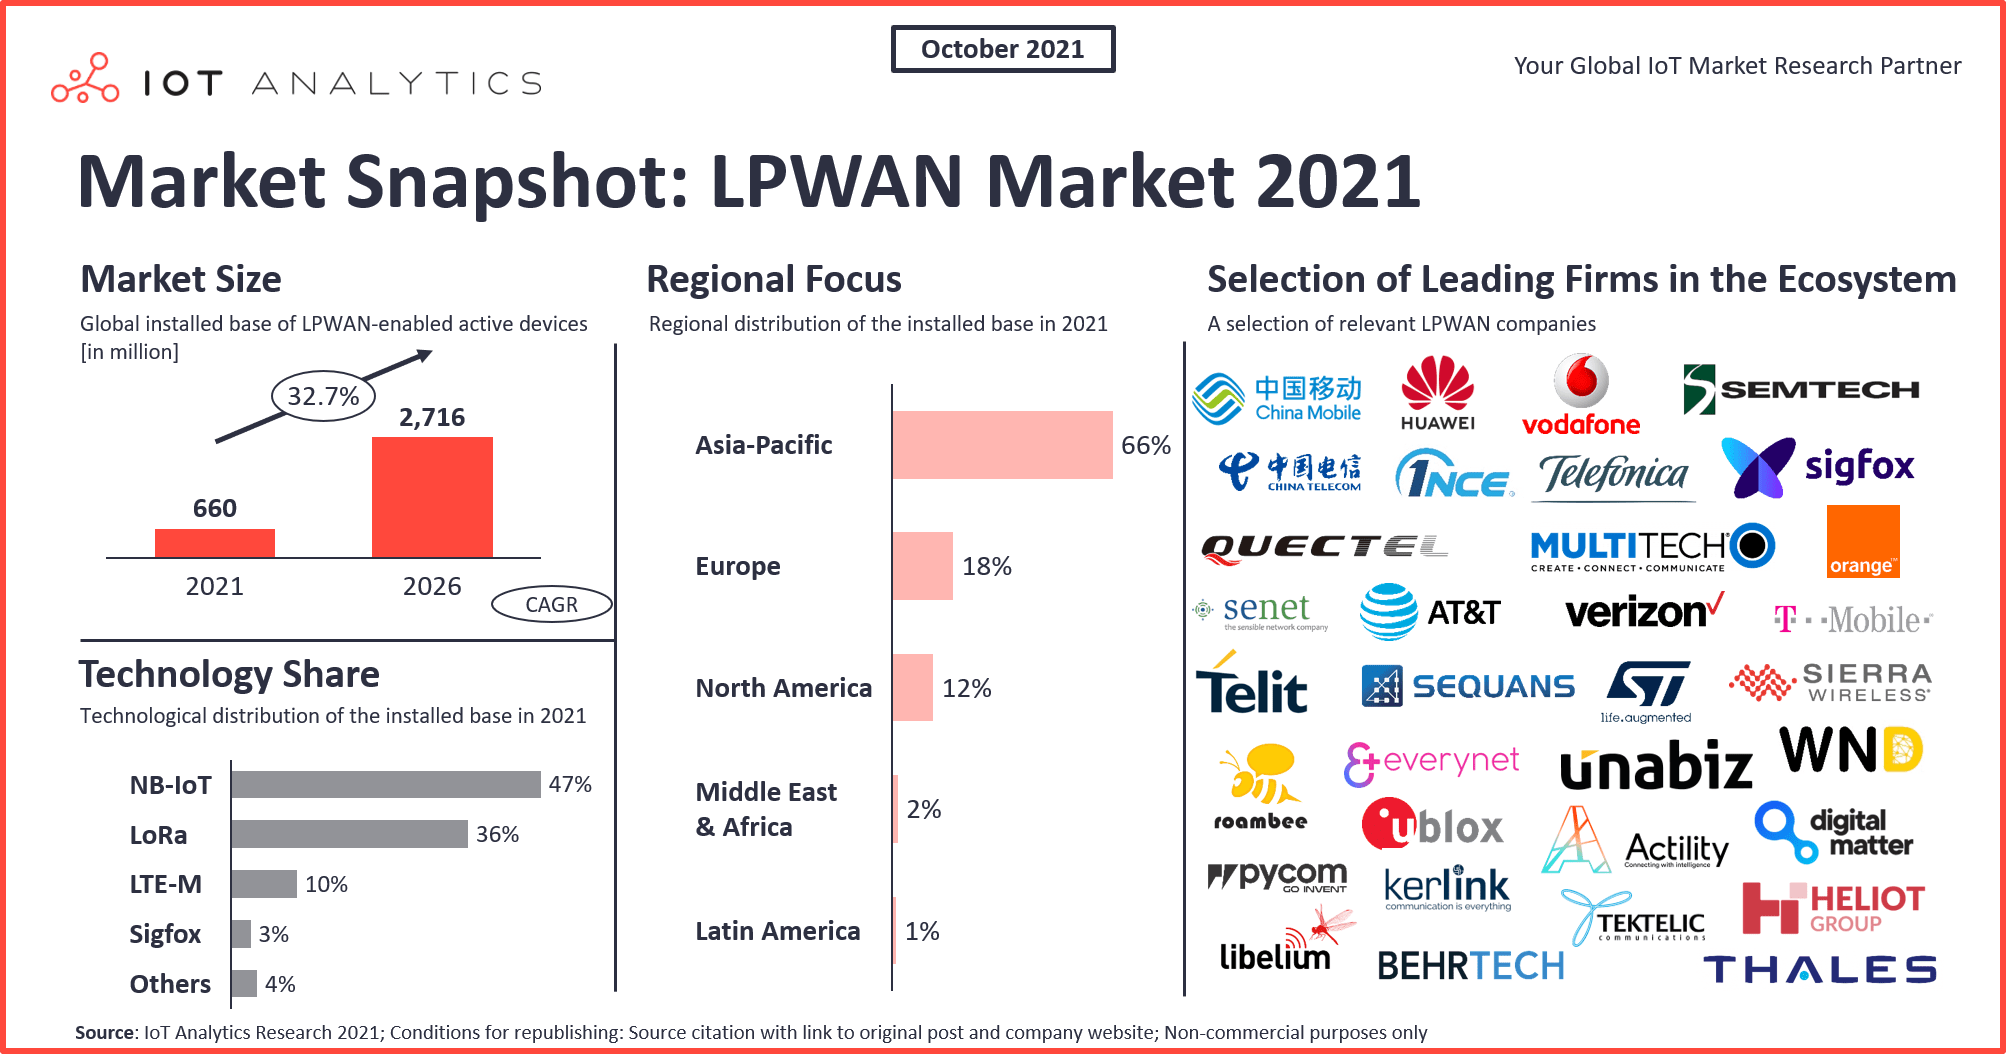 LPWAN Market Snapshot 2021 - Größe, Regionaler Fokus und Auswahl führender Firmen des Ökosystems